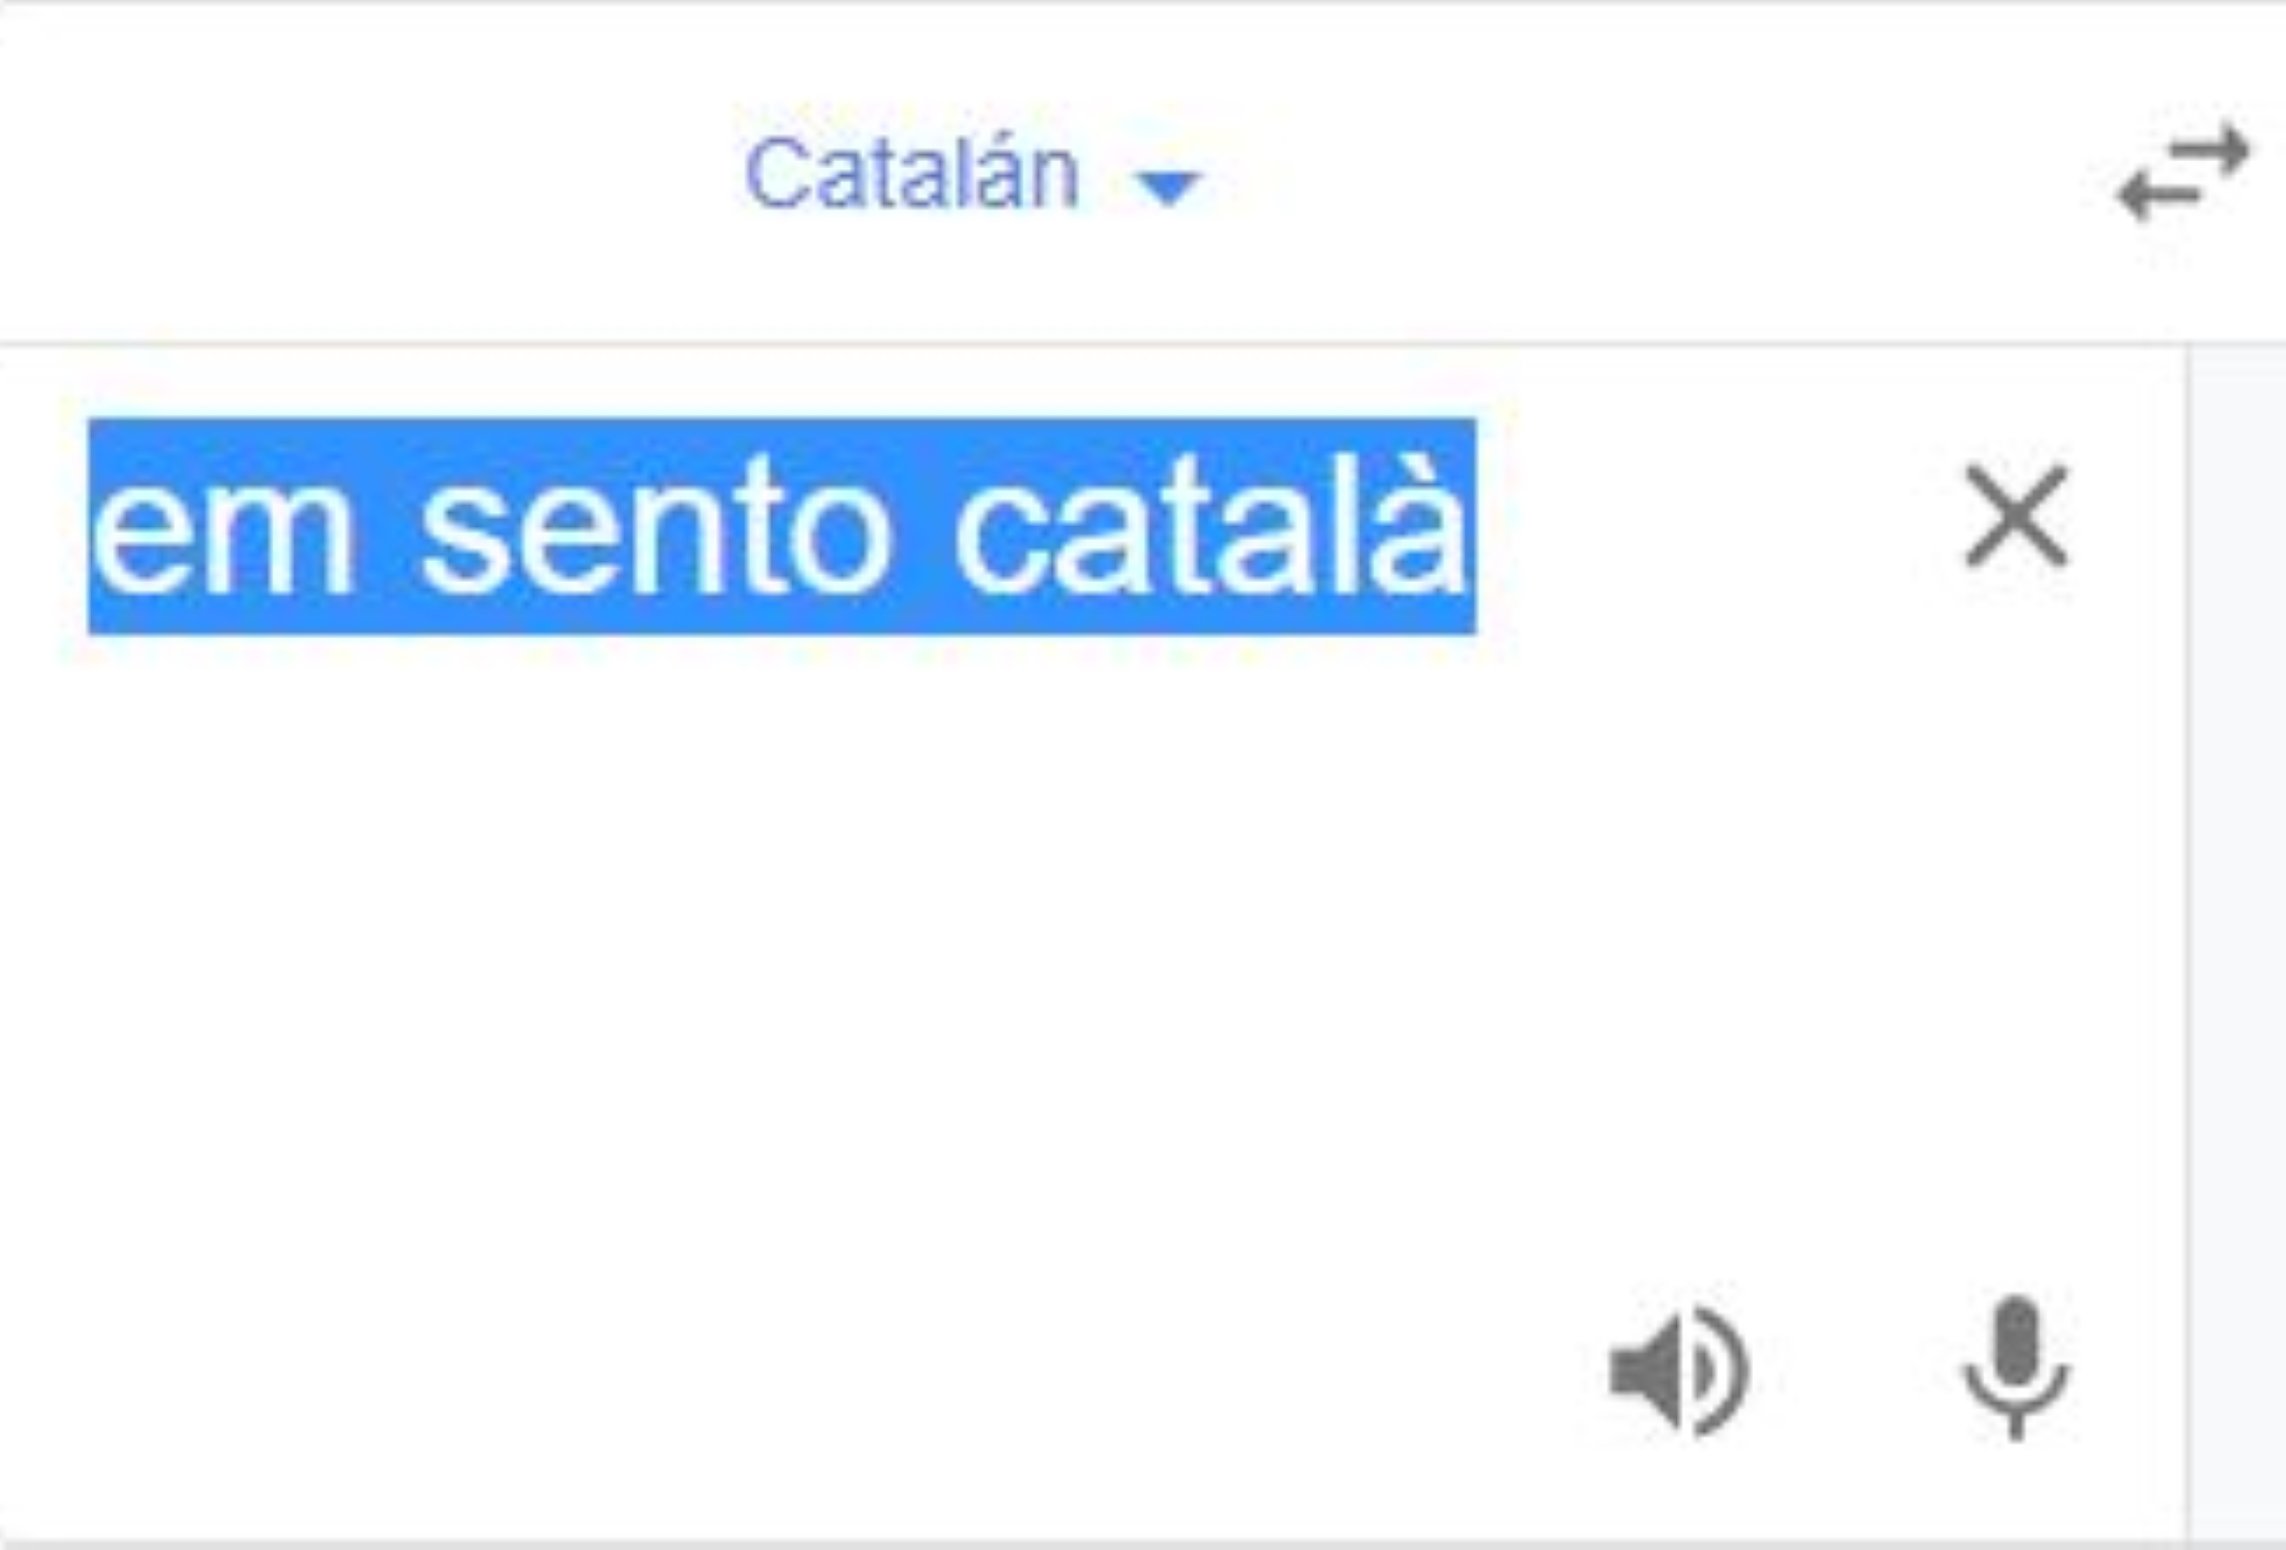 Actuación Fuera de brindis Catalanofobia en el traductor de Google: ¿qué responde a "me siento catalán "?